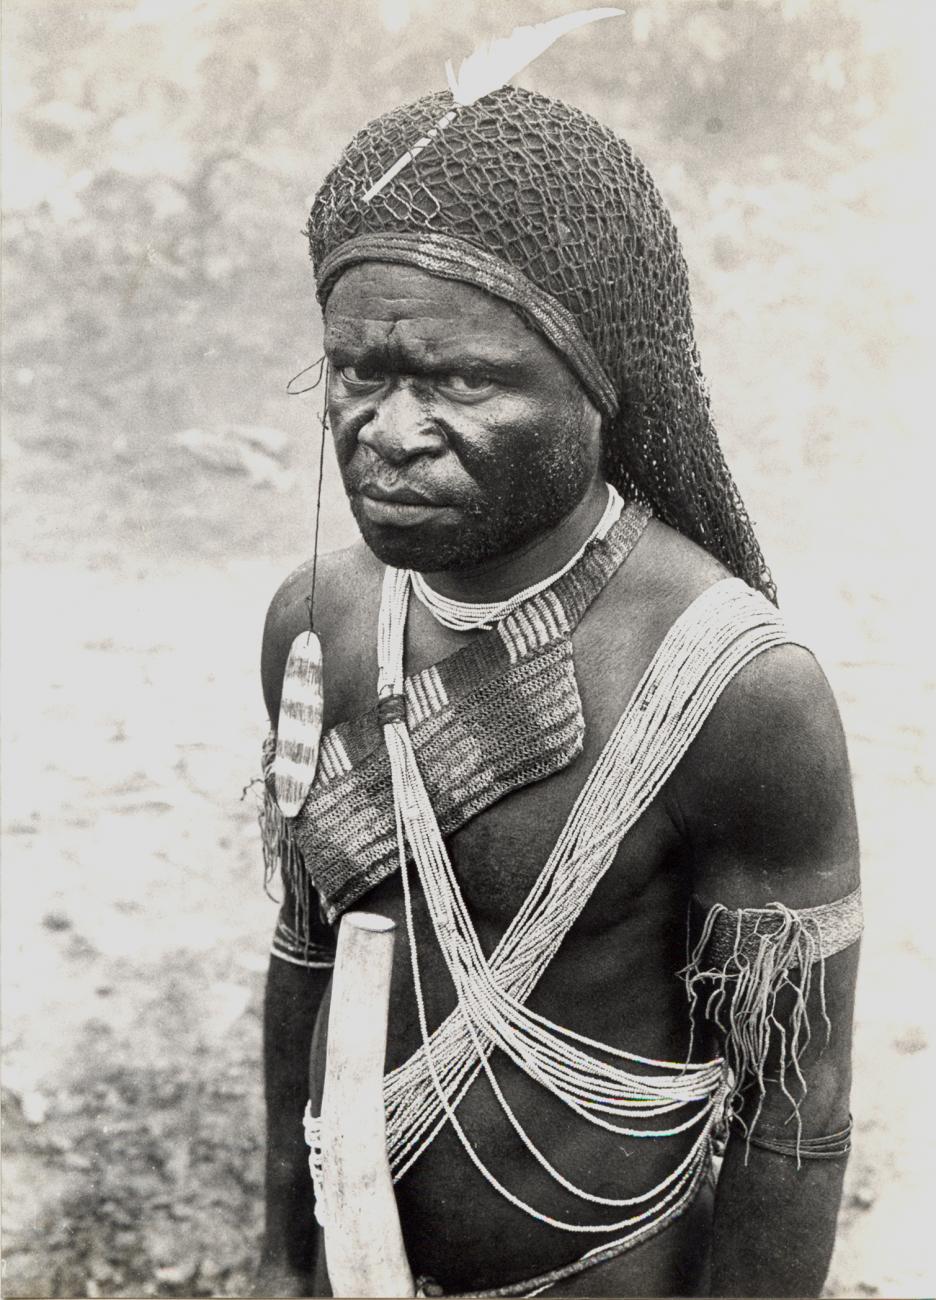 BD/326/33 - 
Portret van een inwoner van de Kamu-vallei,    mogelijk iemand van het Moni-volk
